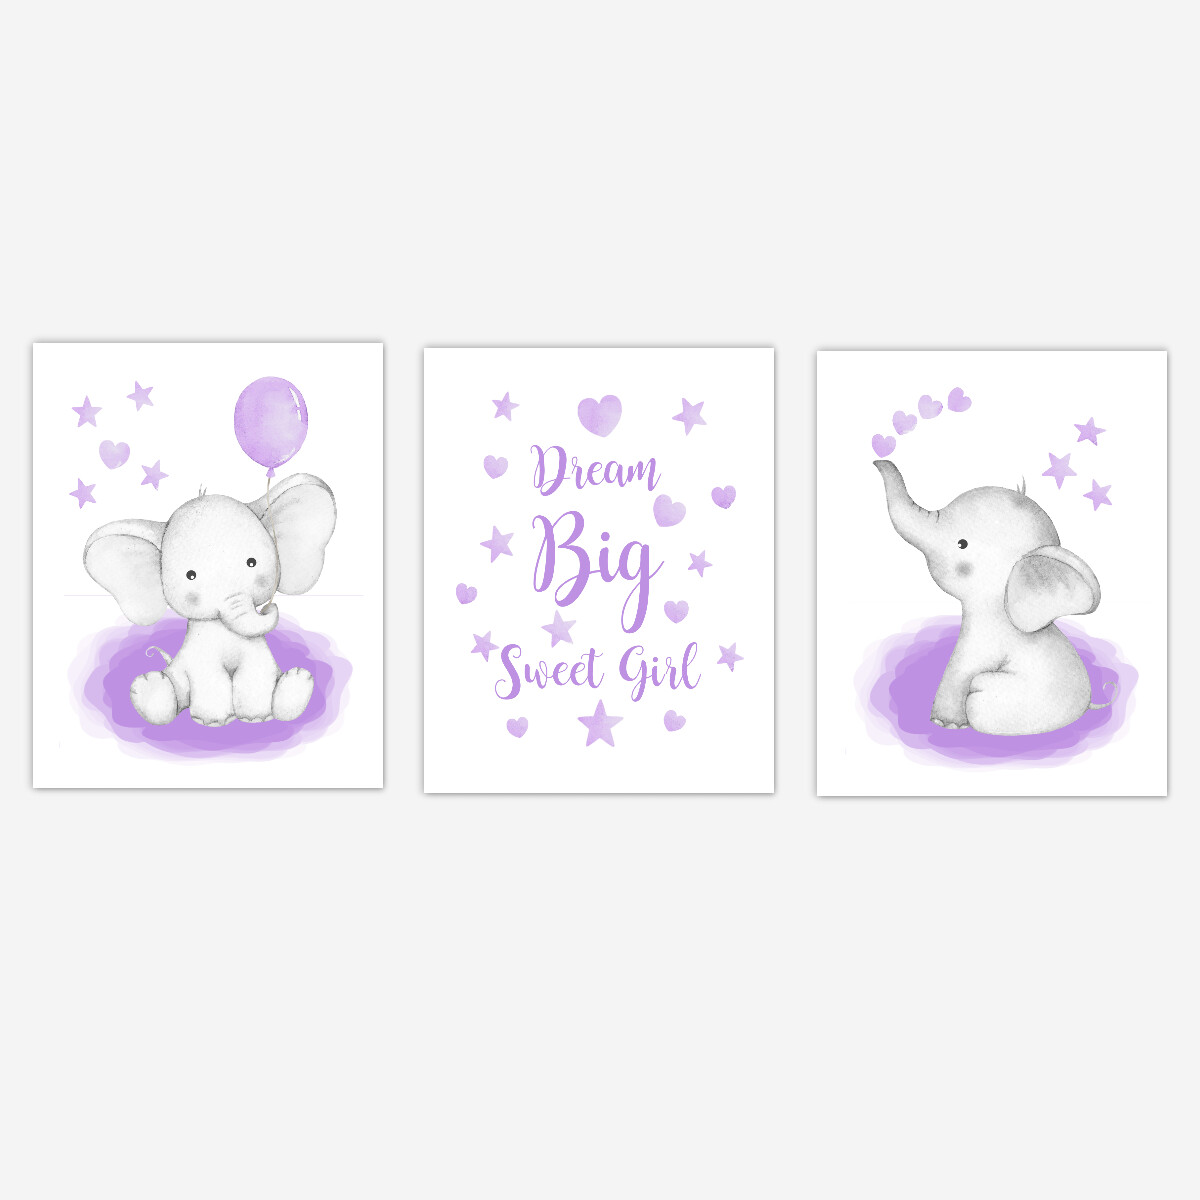 Watercolor Purple Elephants Baby Girl Nursery Art Wall Decor 3 UNFRAMED PRINTS or CANVAS